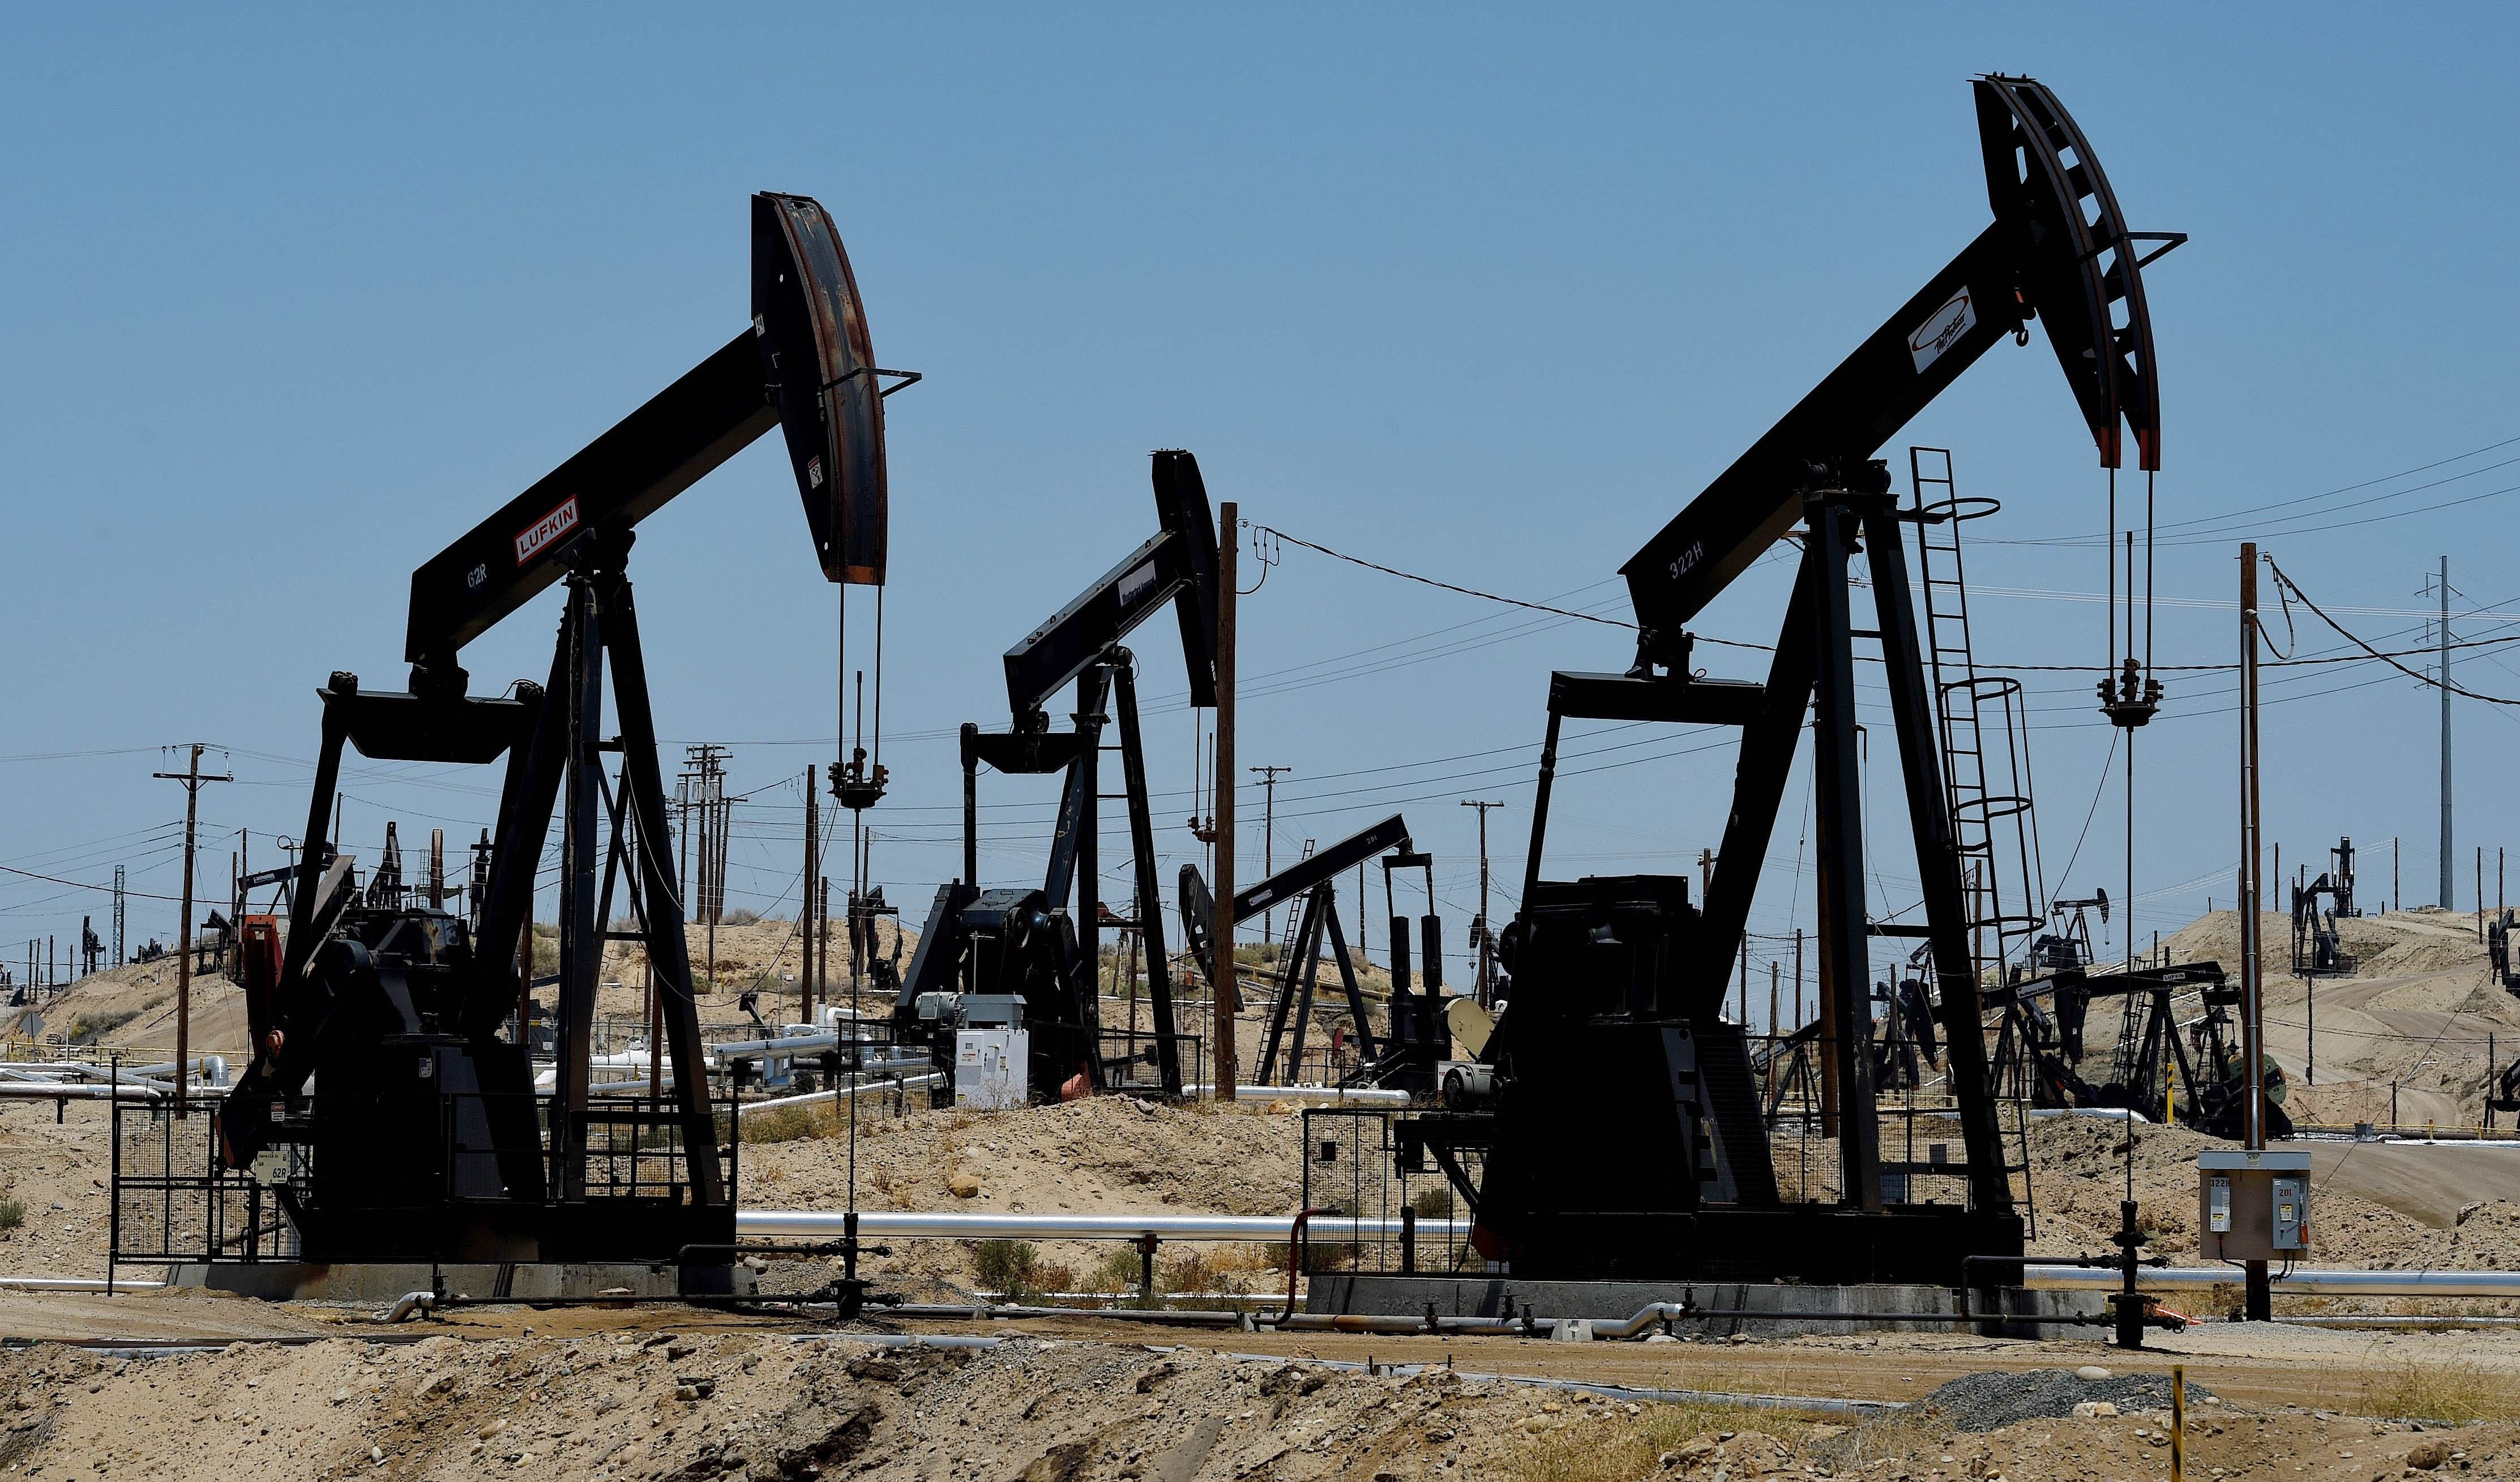 افزایش 1 دلاری قیمت نفت با کاهش ذخایر سوختی آمریکا